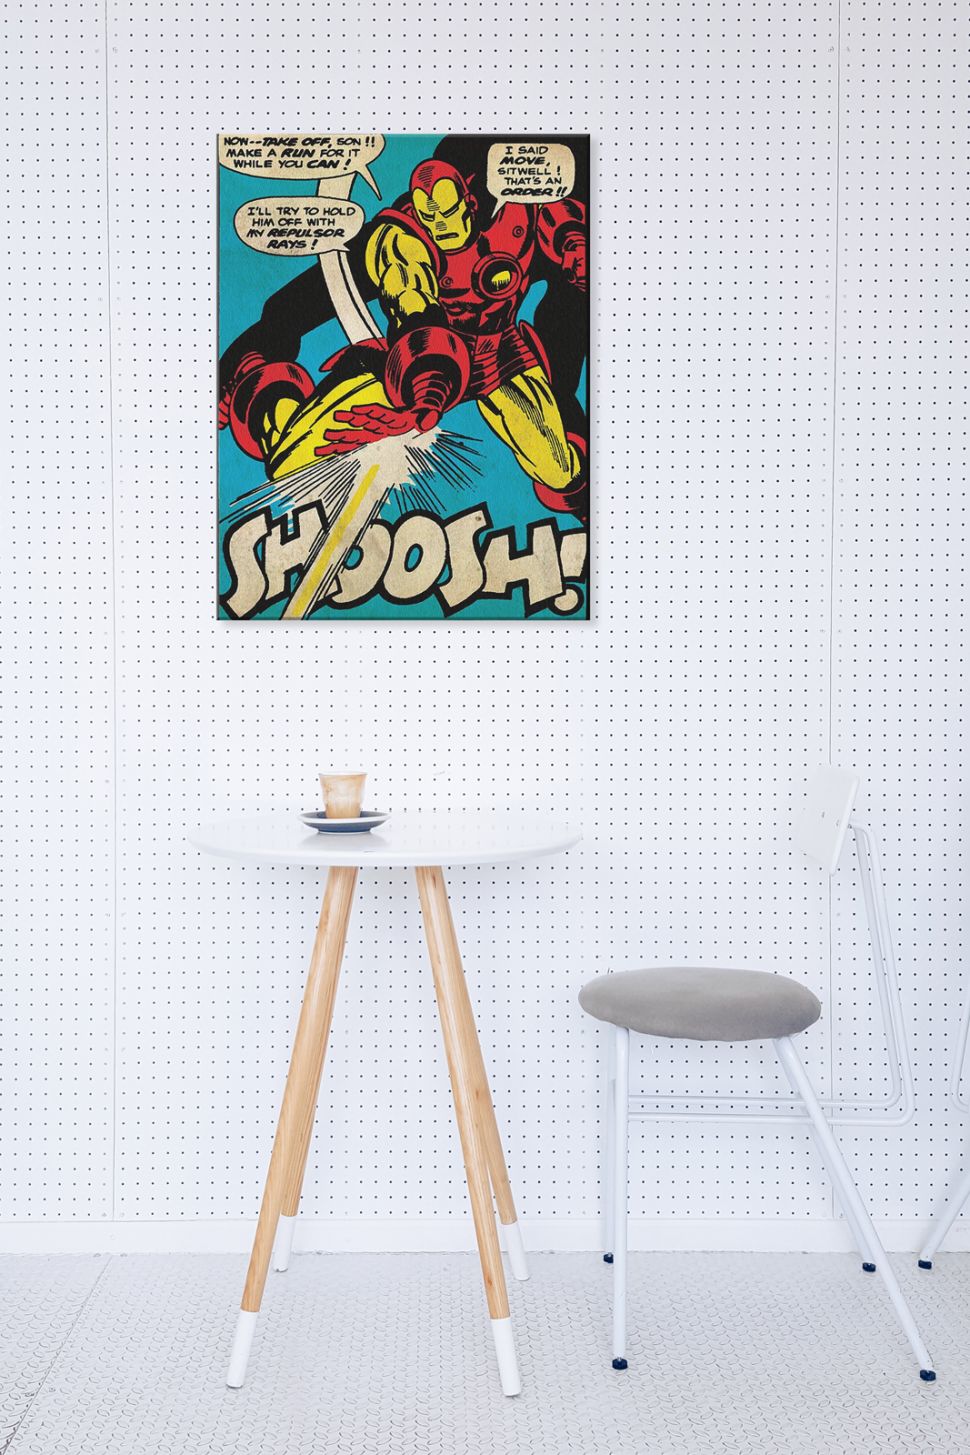 Obraz z Iron manem powieszony nad białym stolikiem